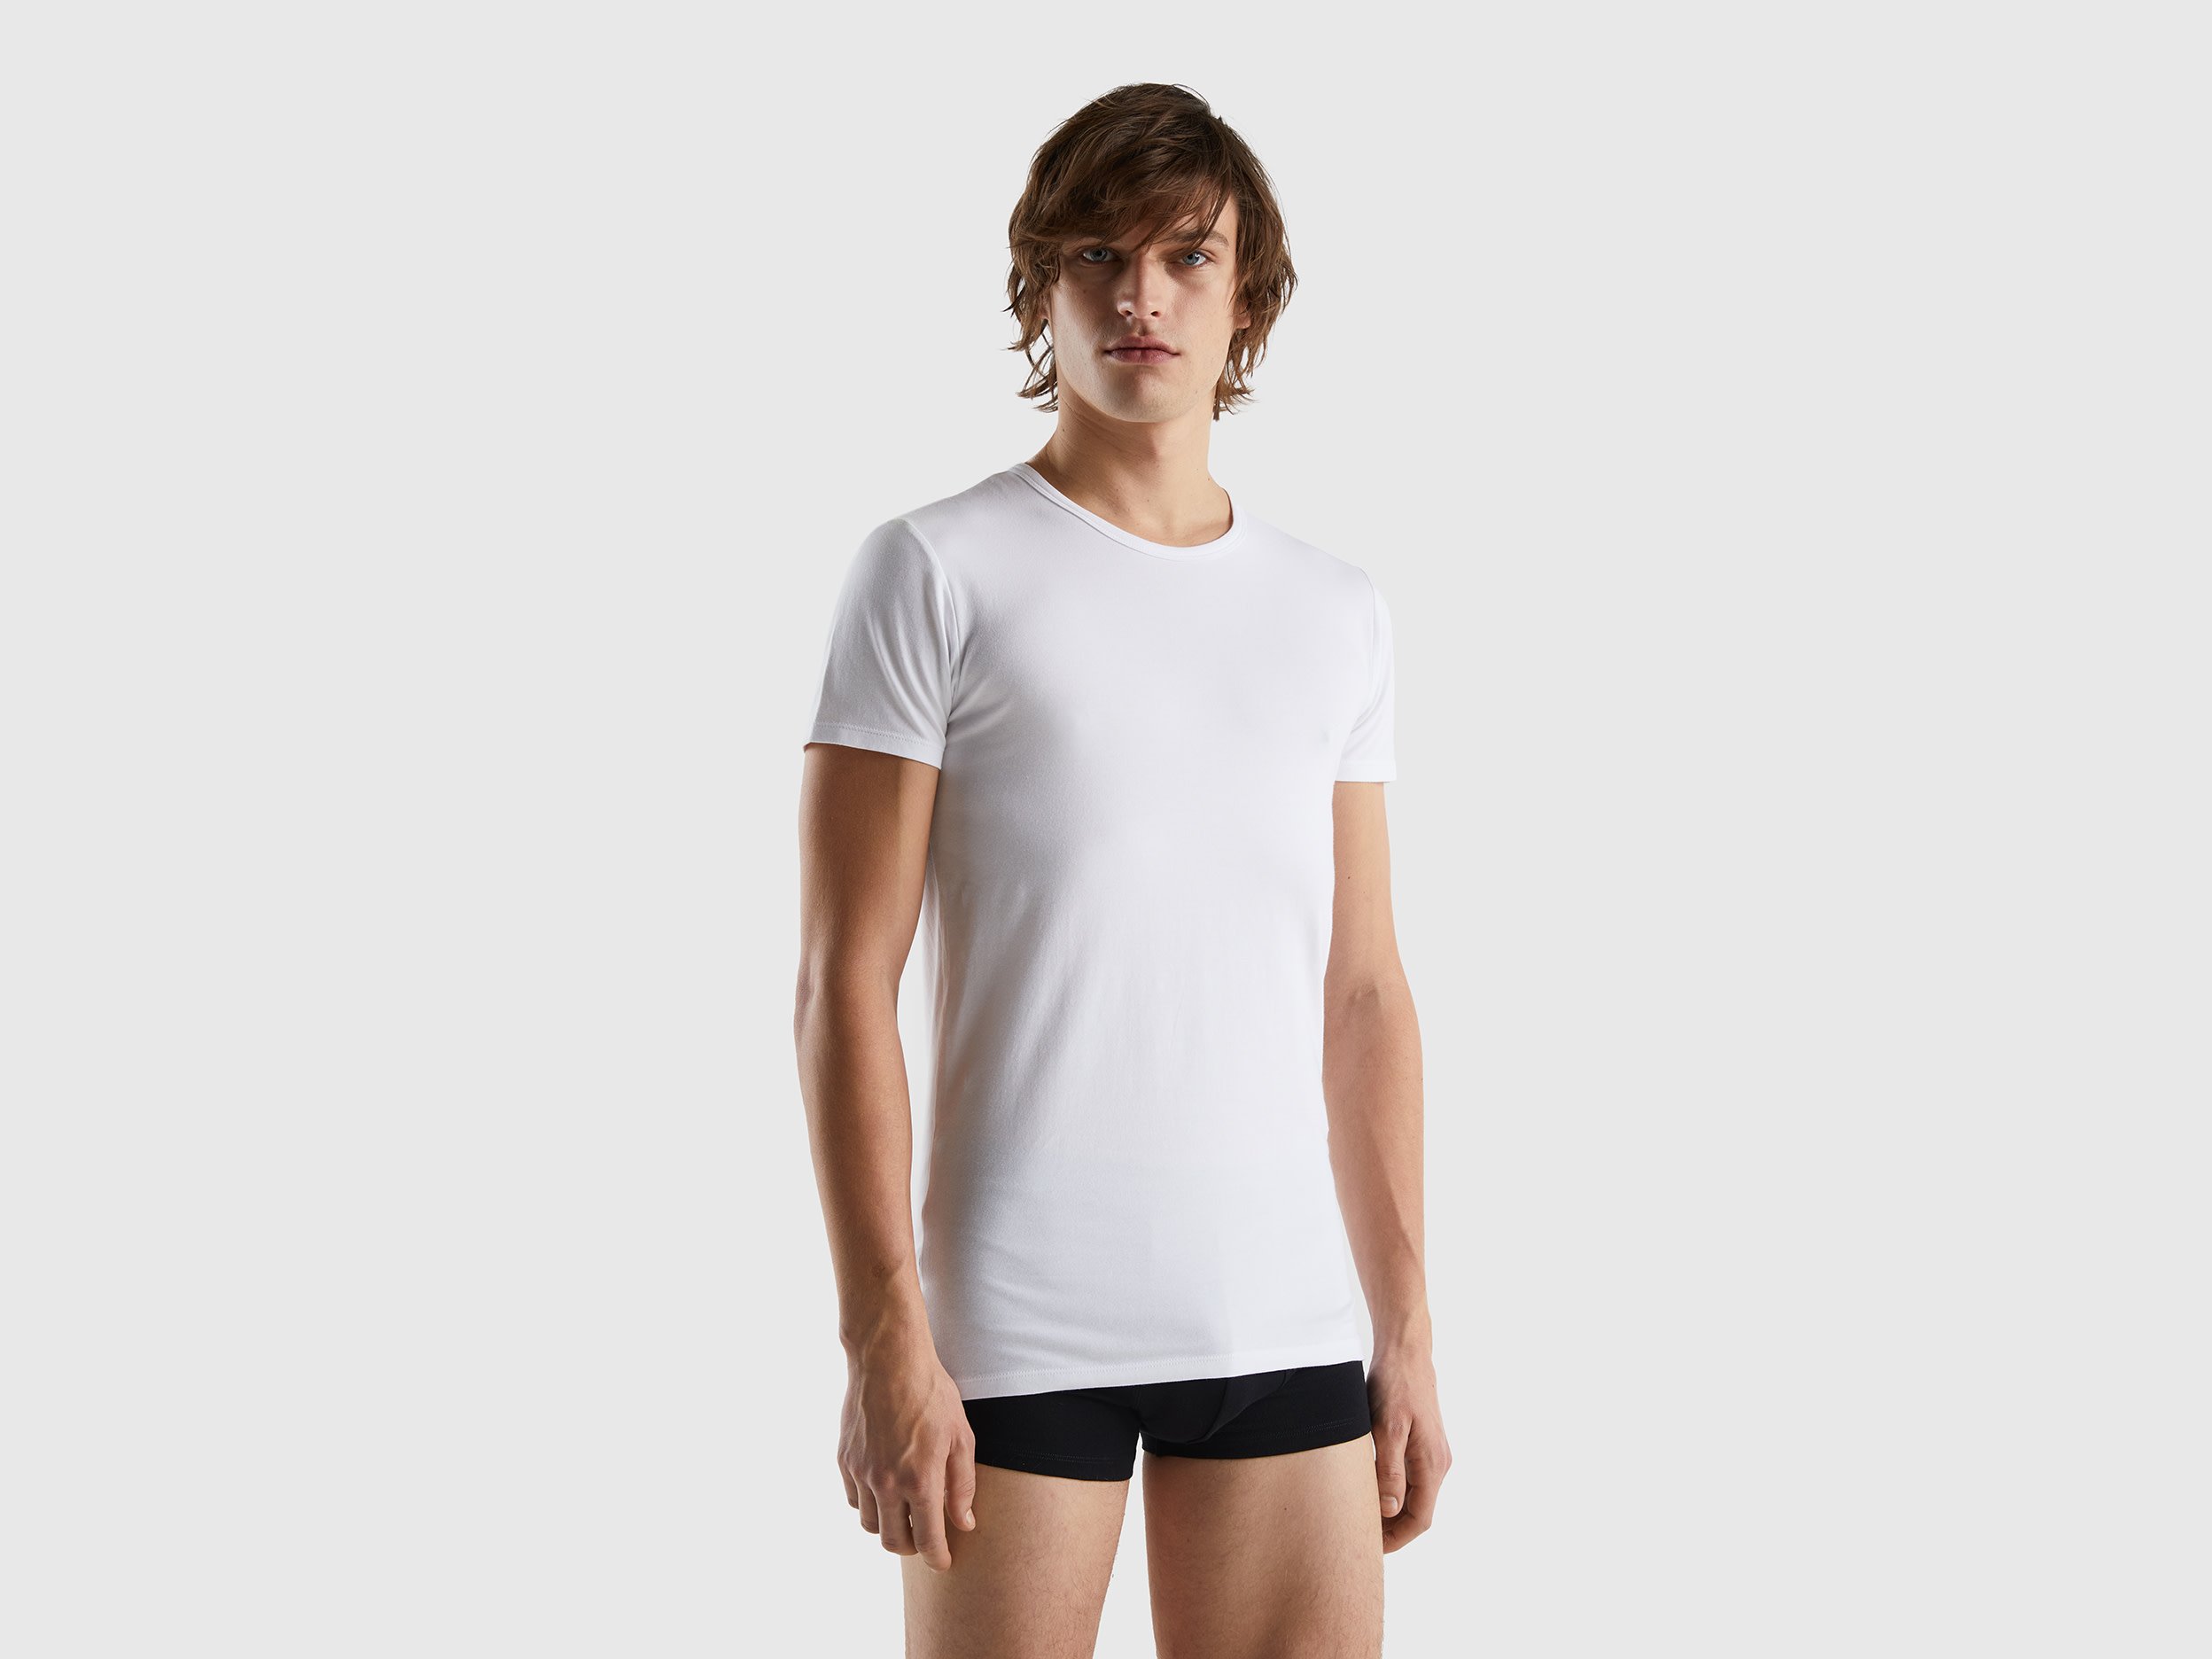 Benetton, Organic Stretch Cotton T-shirt, size M, White, Men